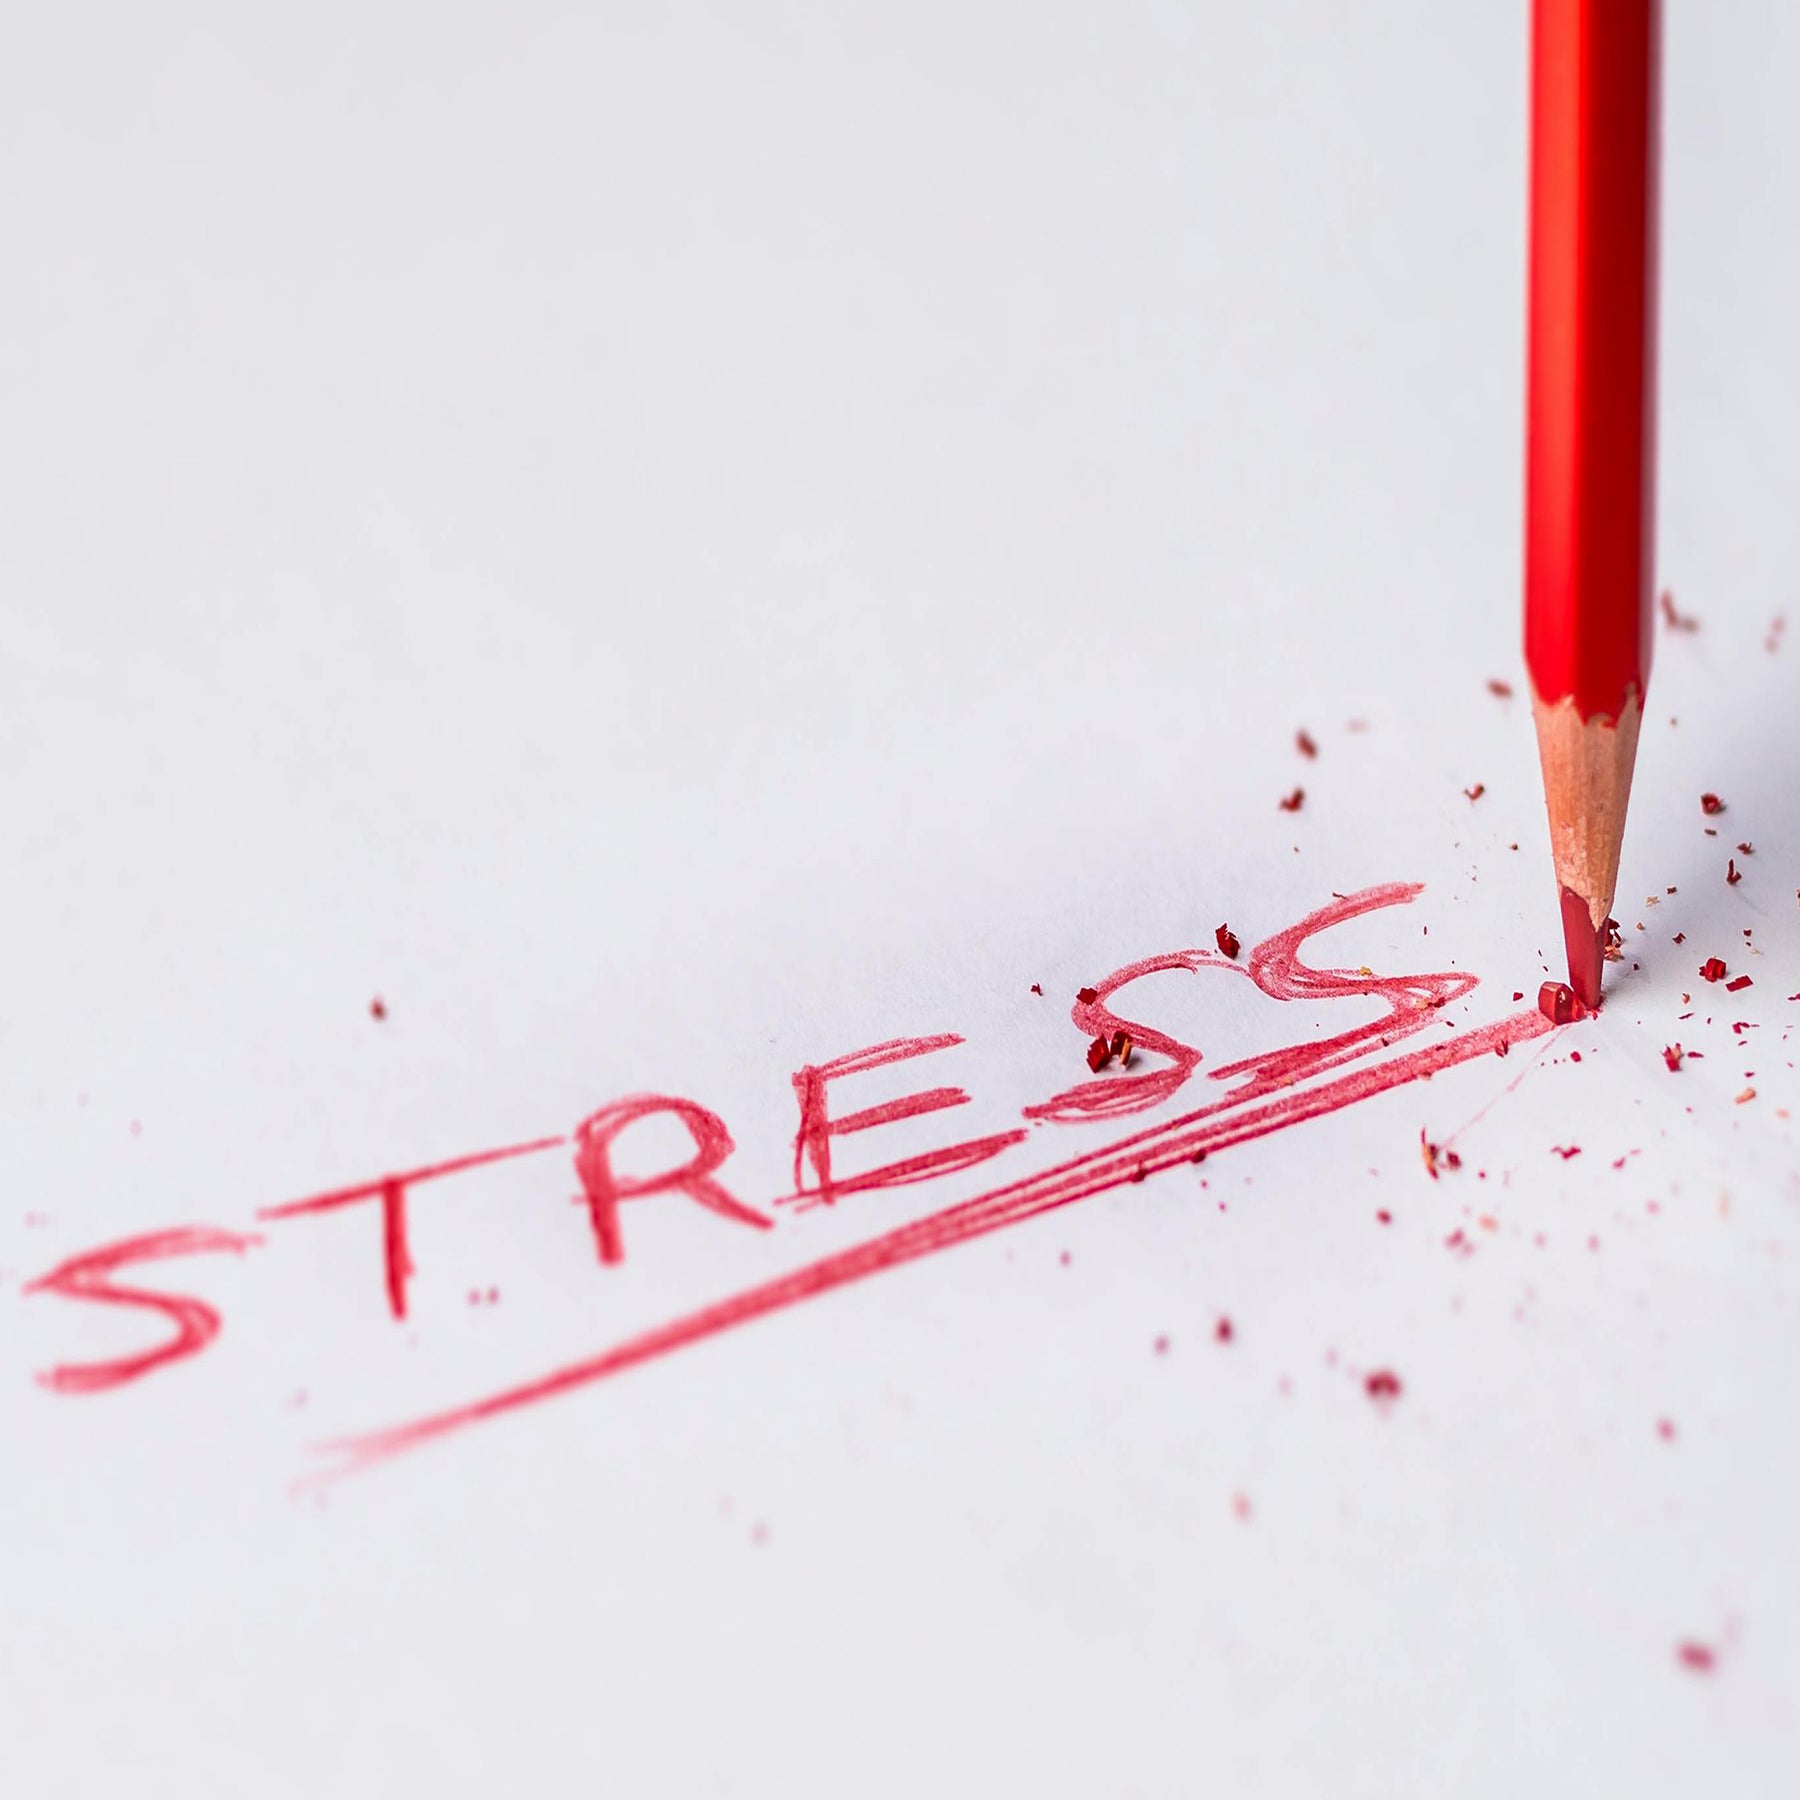 Stress führt zu einer erhöhten Freisetzung von Cortisol